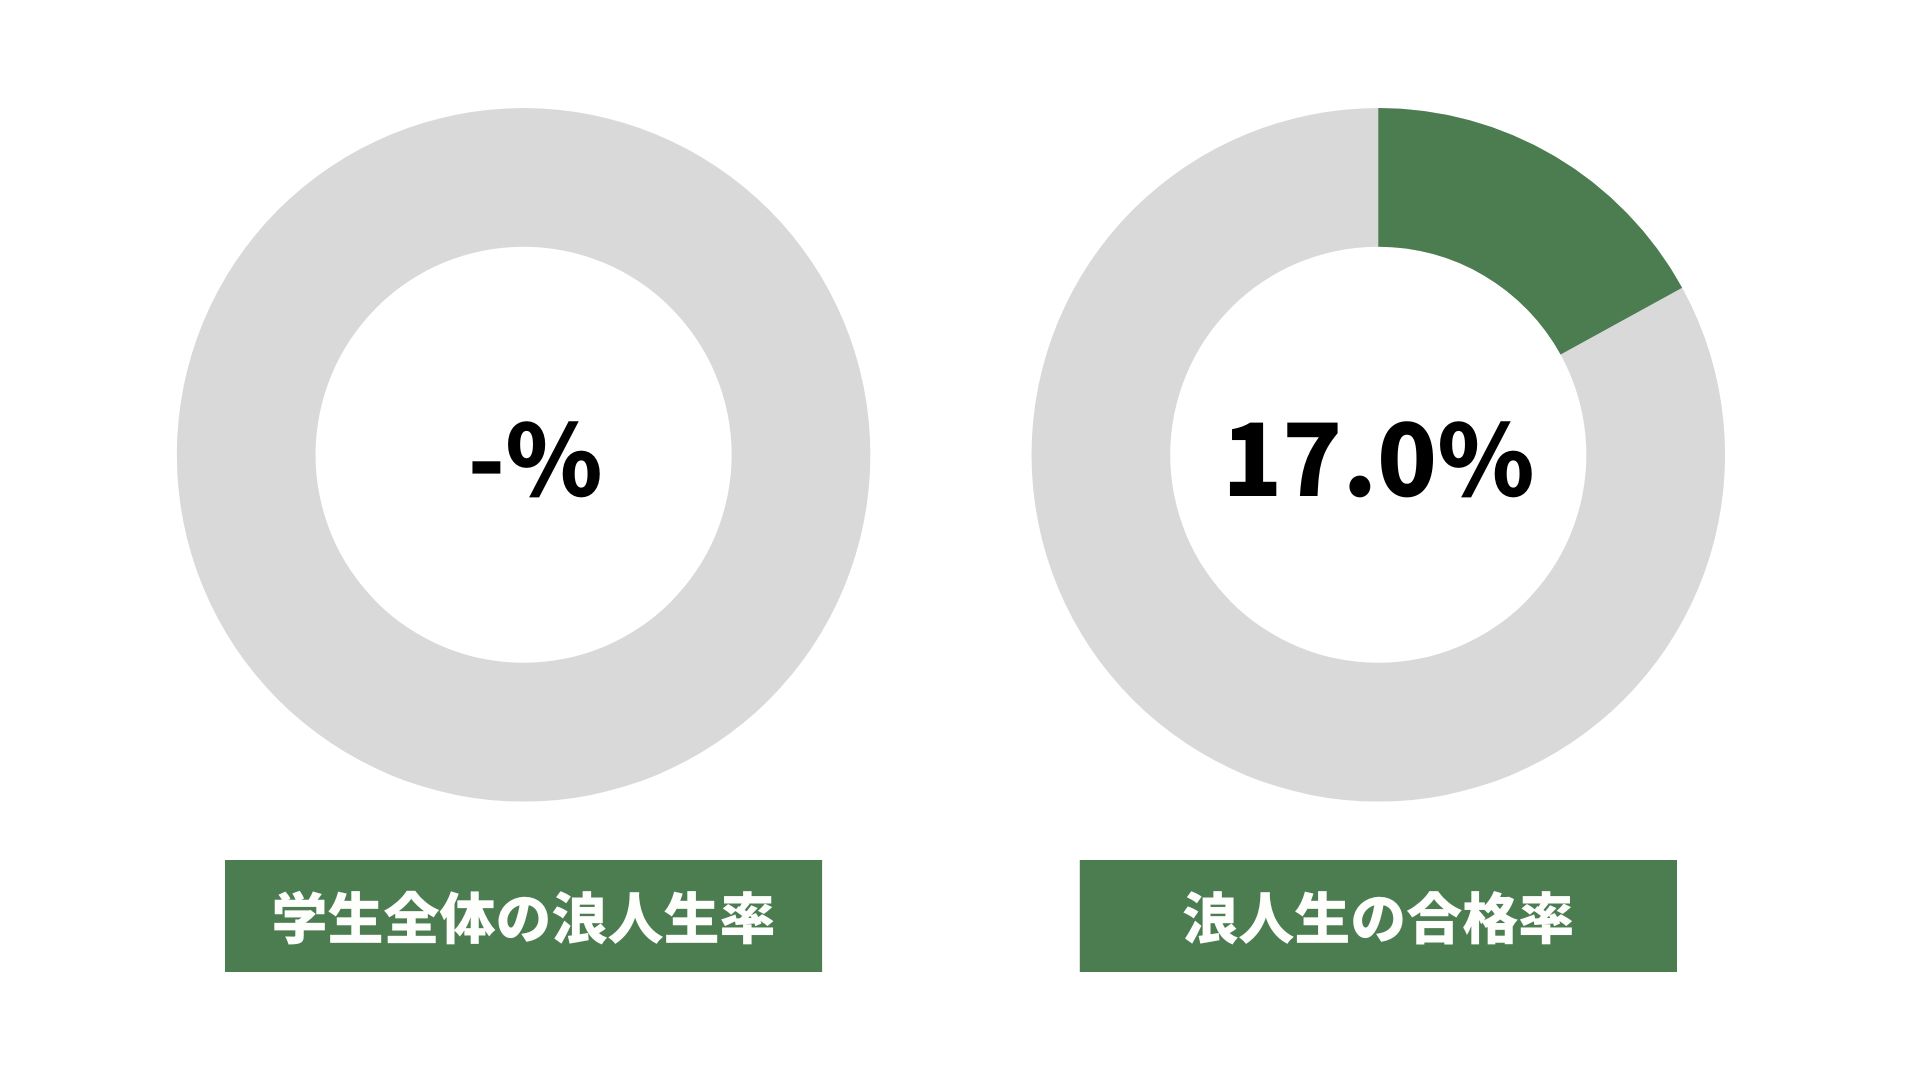 福島大学の浪人生の割合